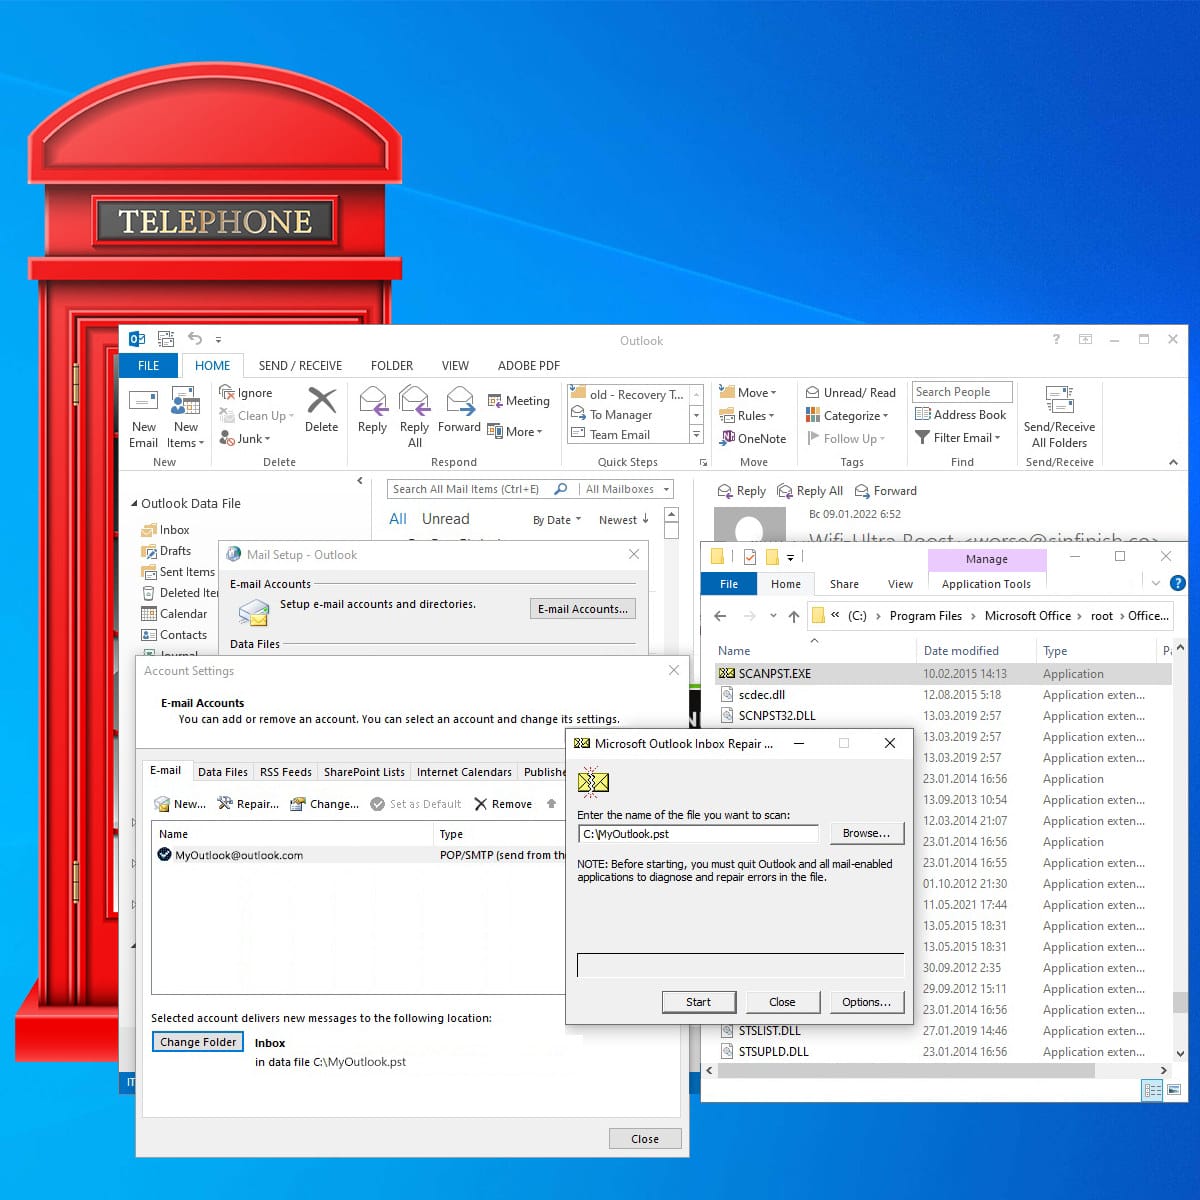 Microsoft Outlook Repair Tool